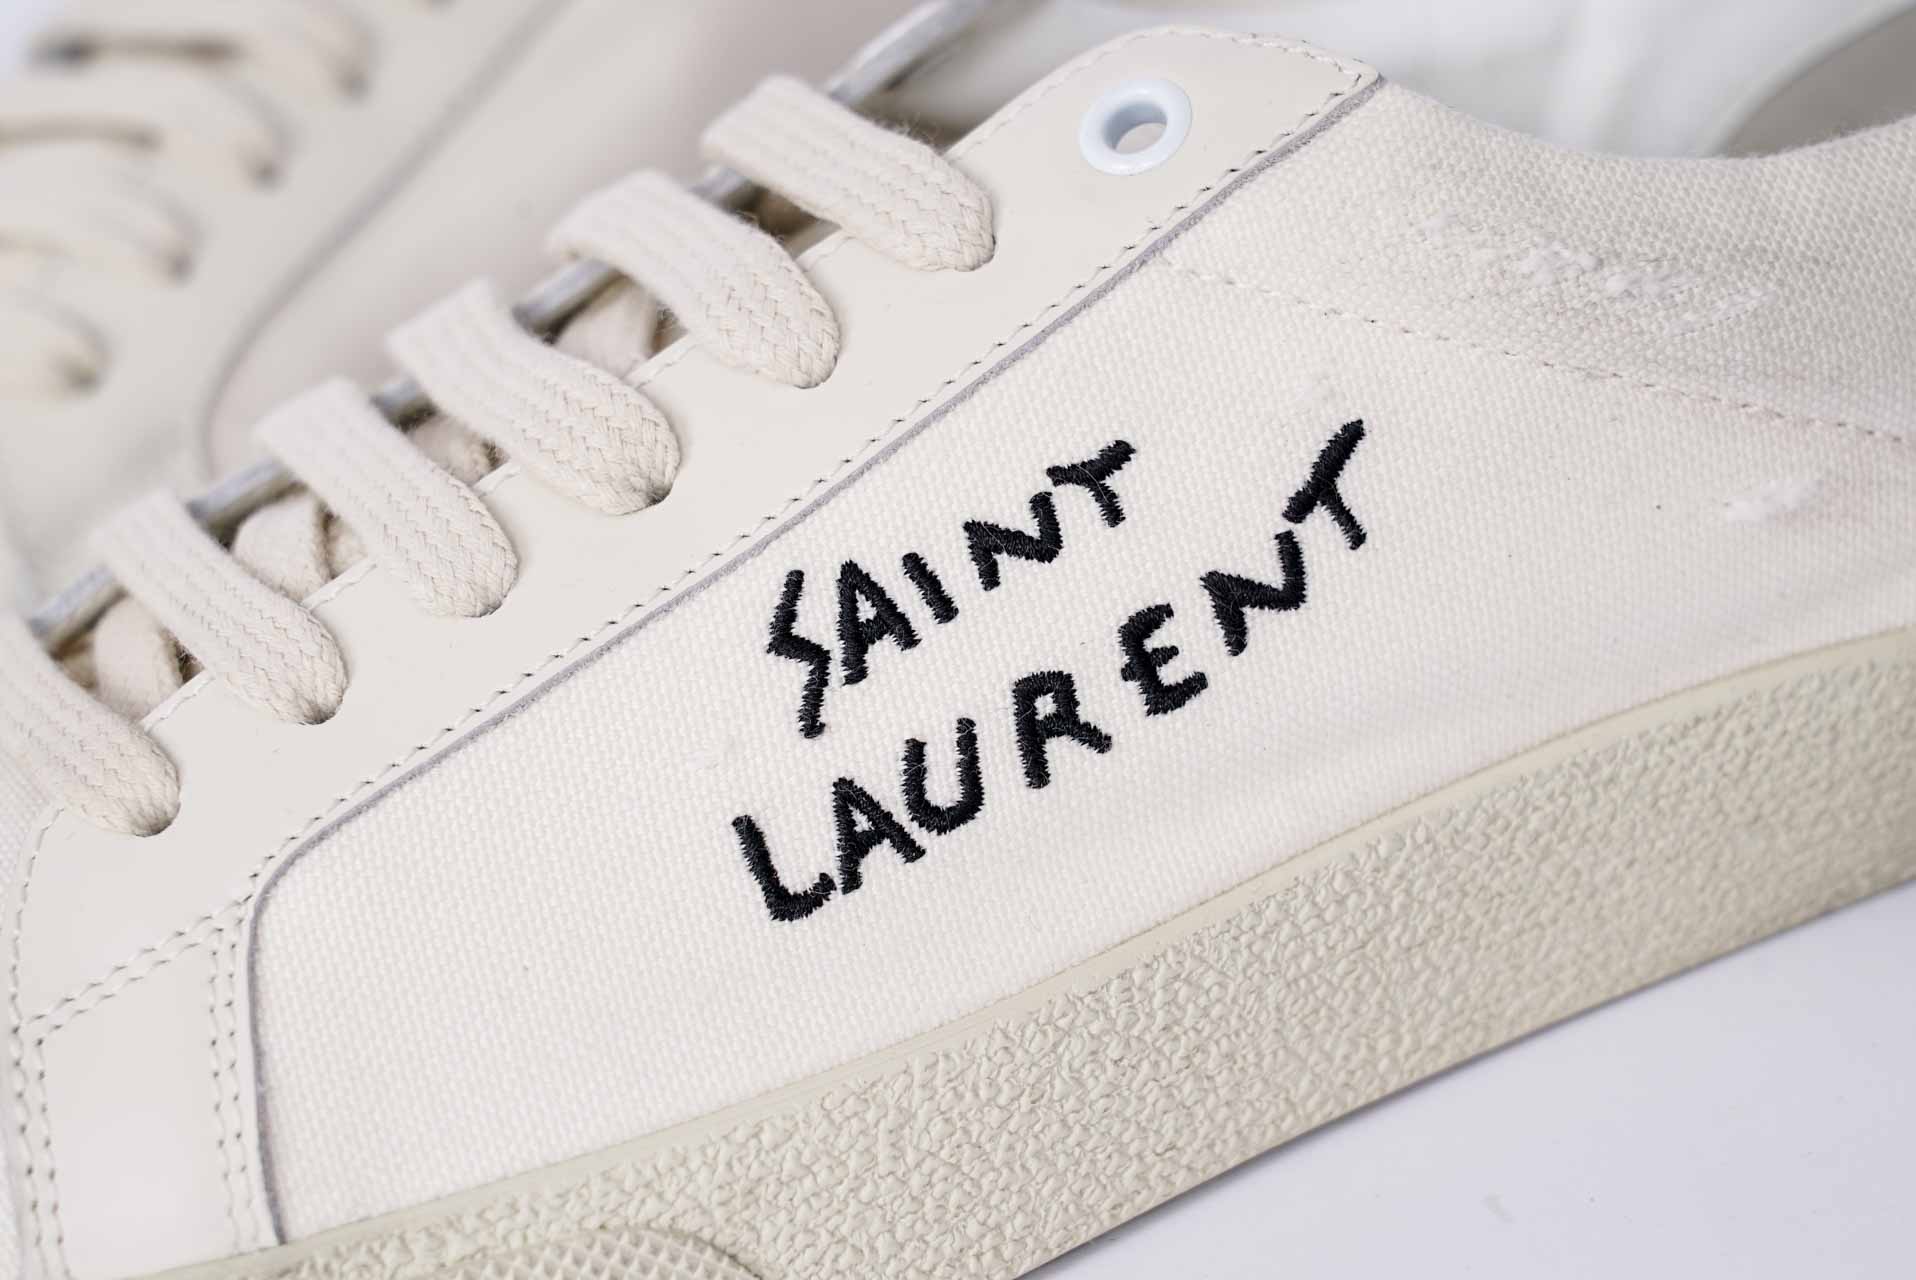 giày saint laurent độc đáo hiện nay